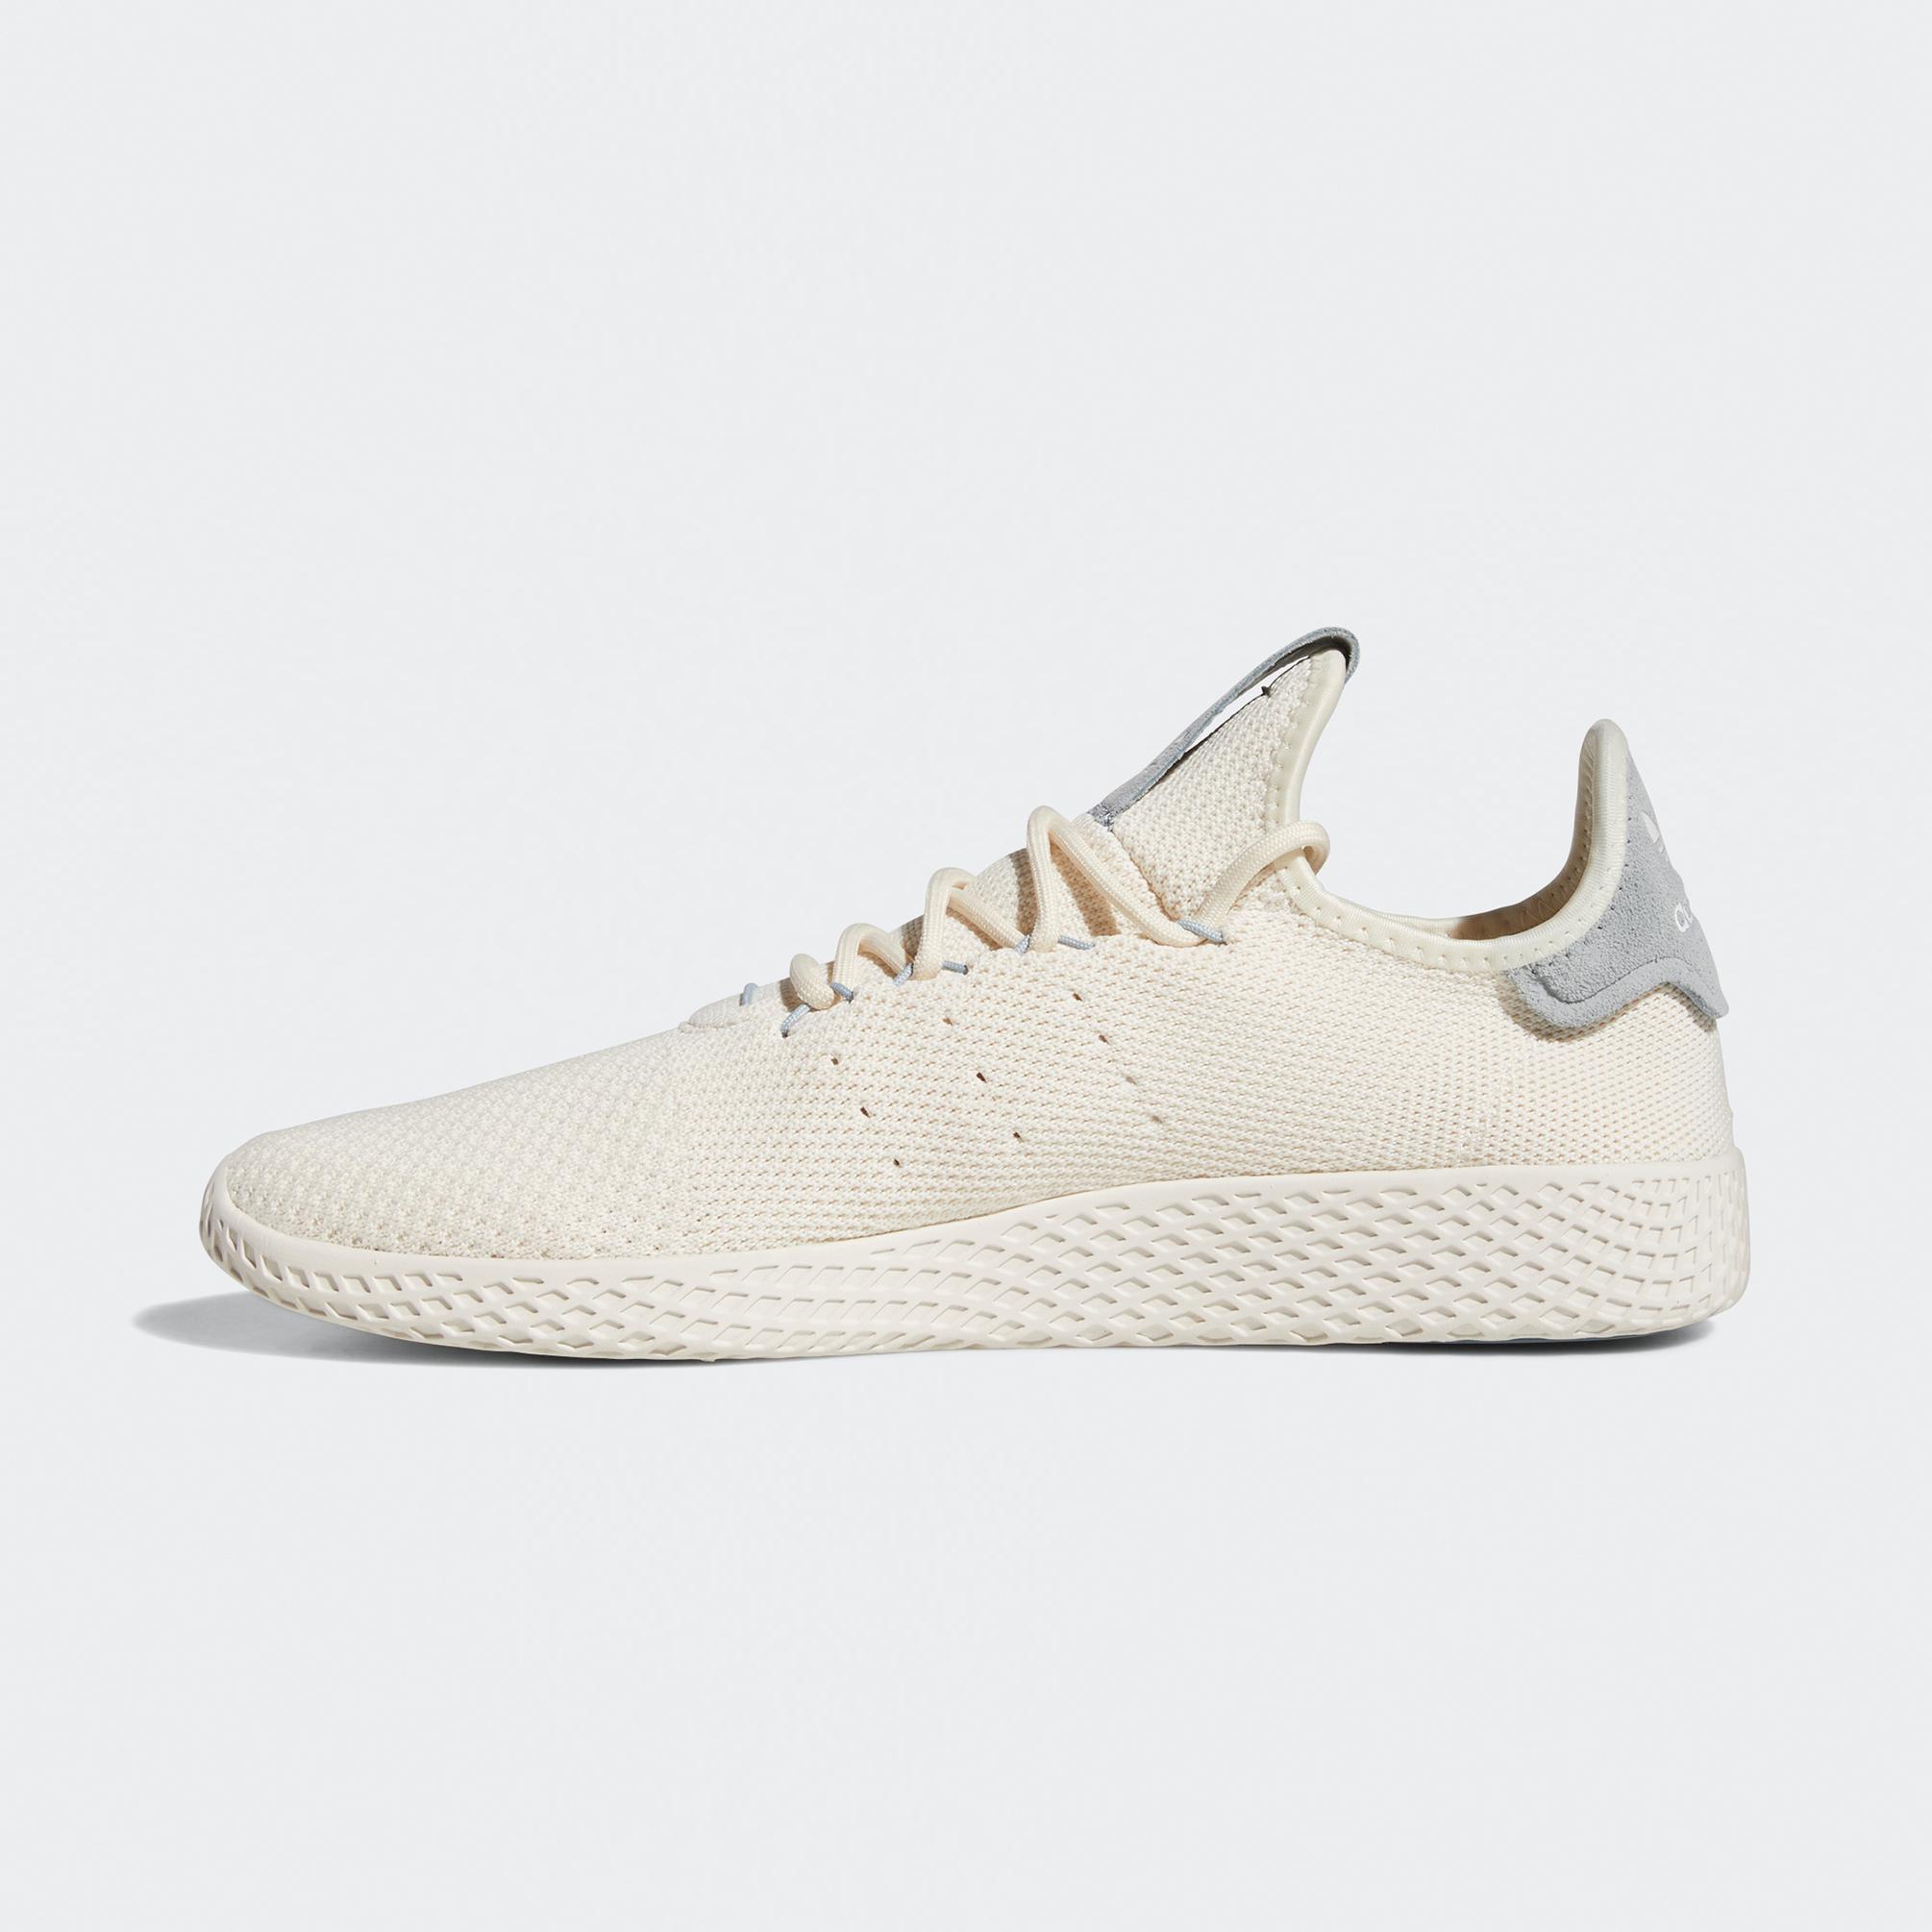  adidas X Pharrell Williams Tennis Hu Erkek Beyaz Spor Ayakkabı